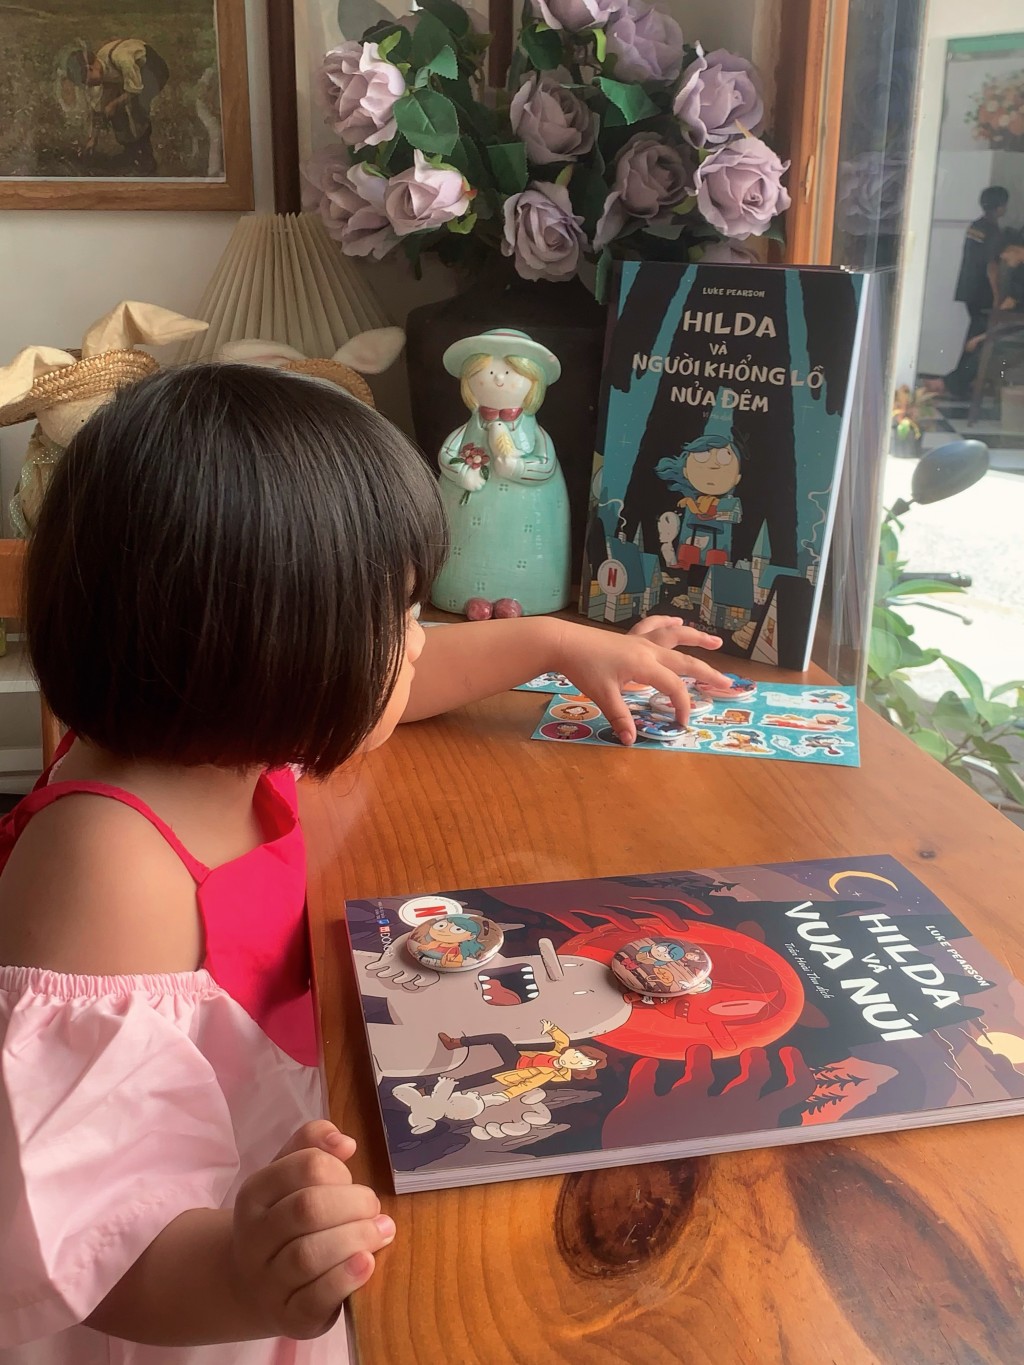 Bộ sách về cô bé Hilda ưa mạo hiểm đến với bạn đọc Việt